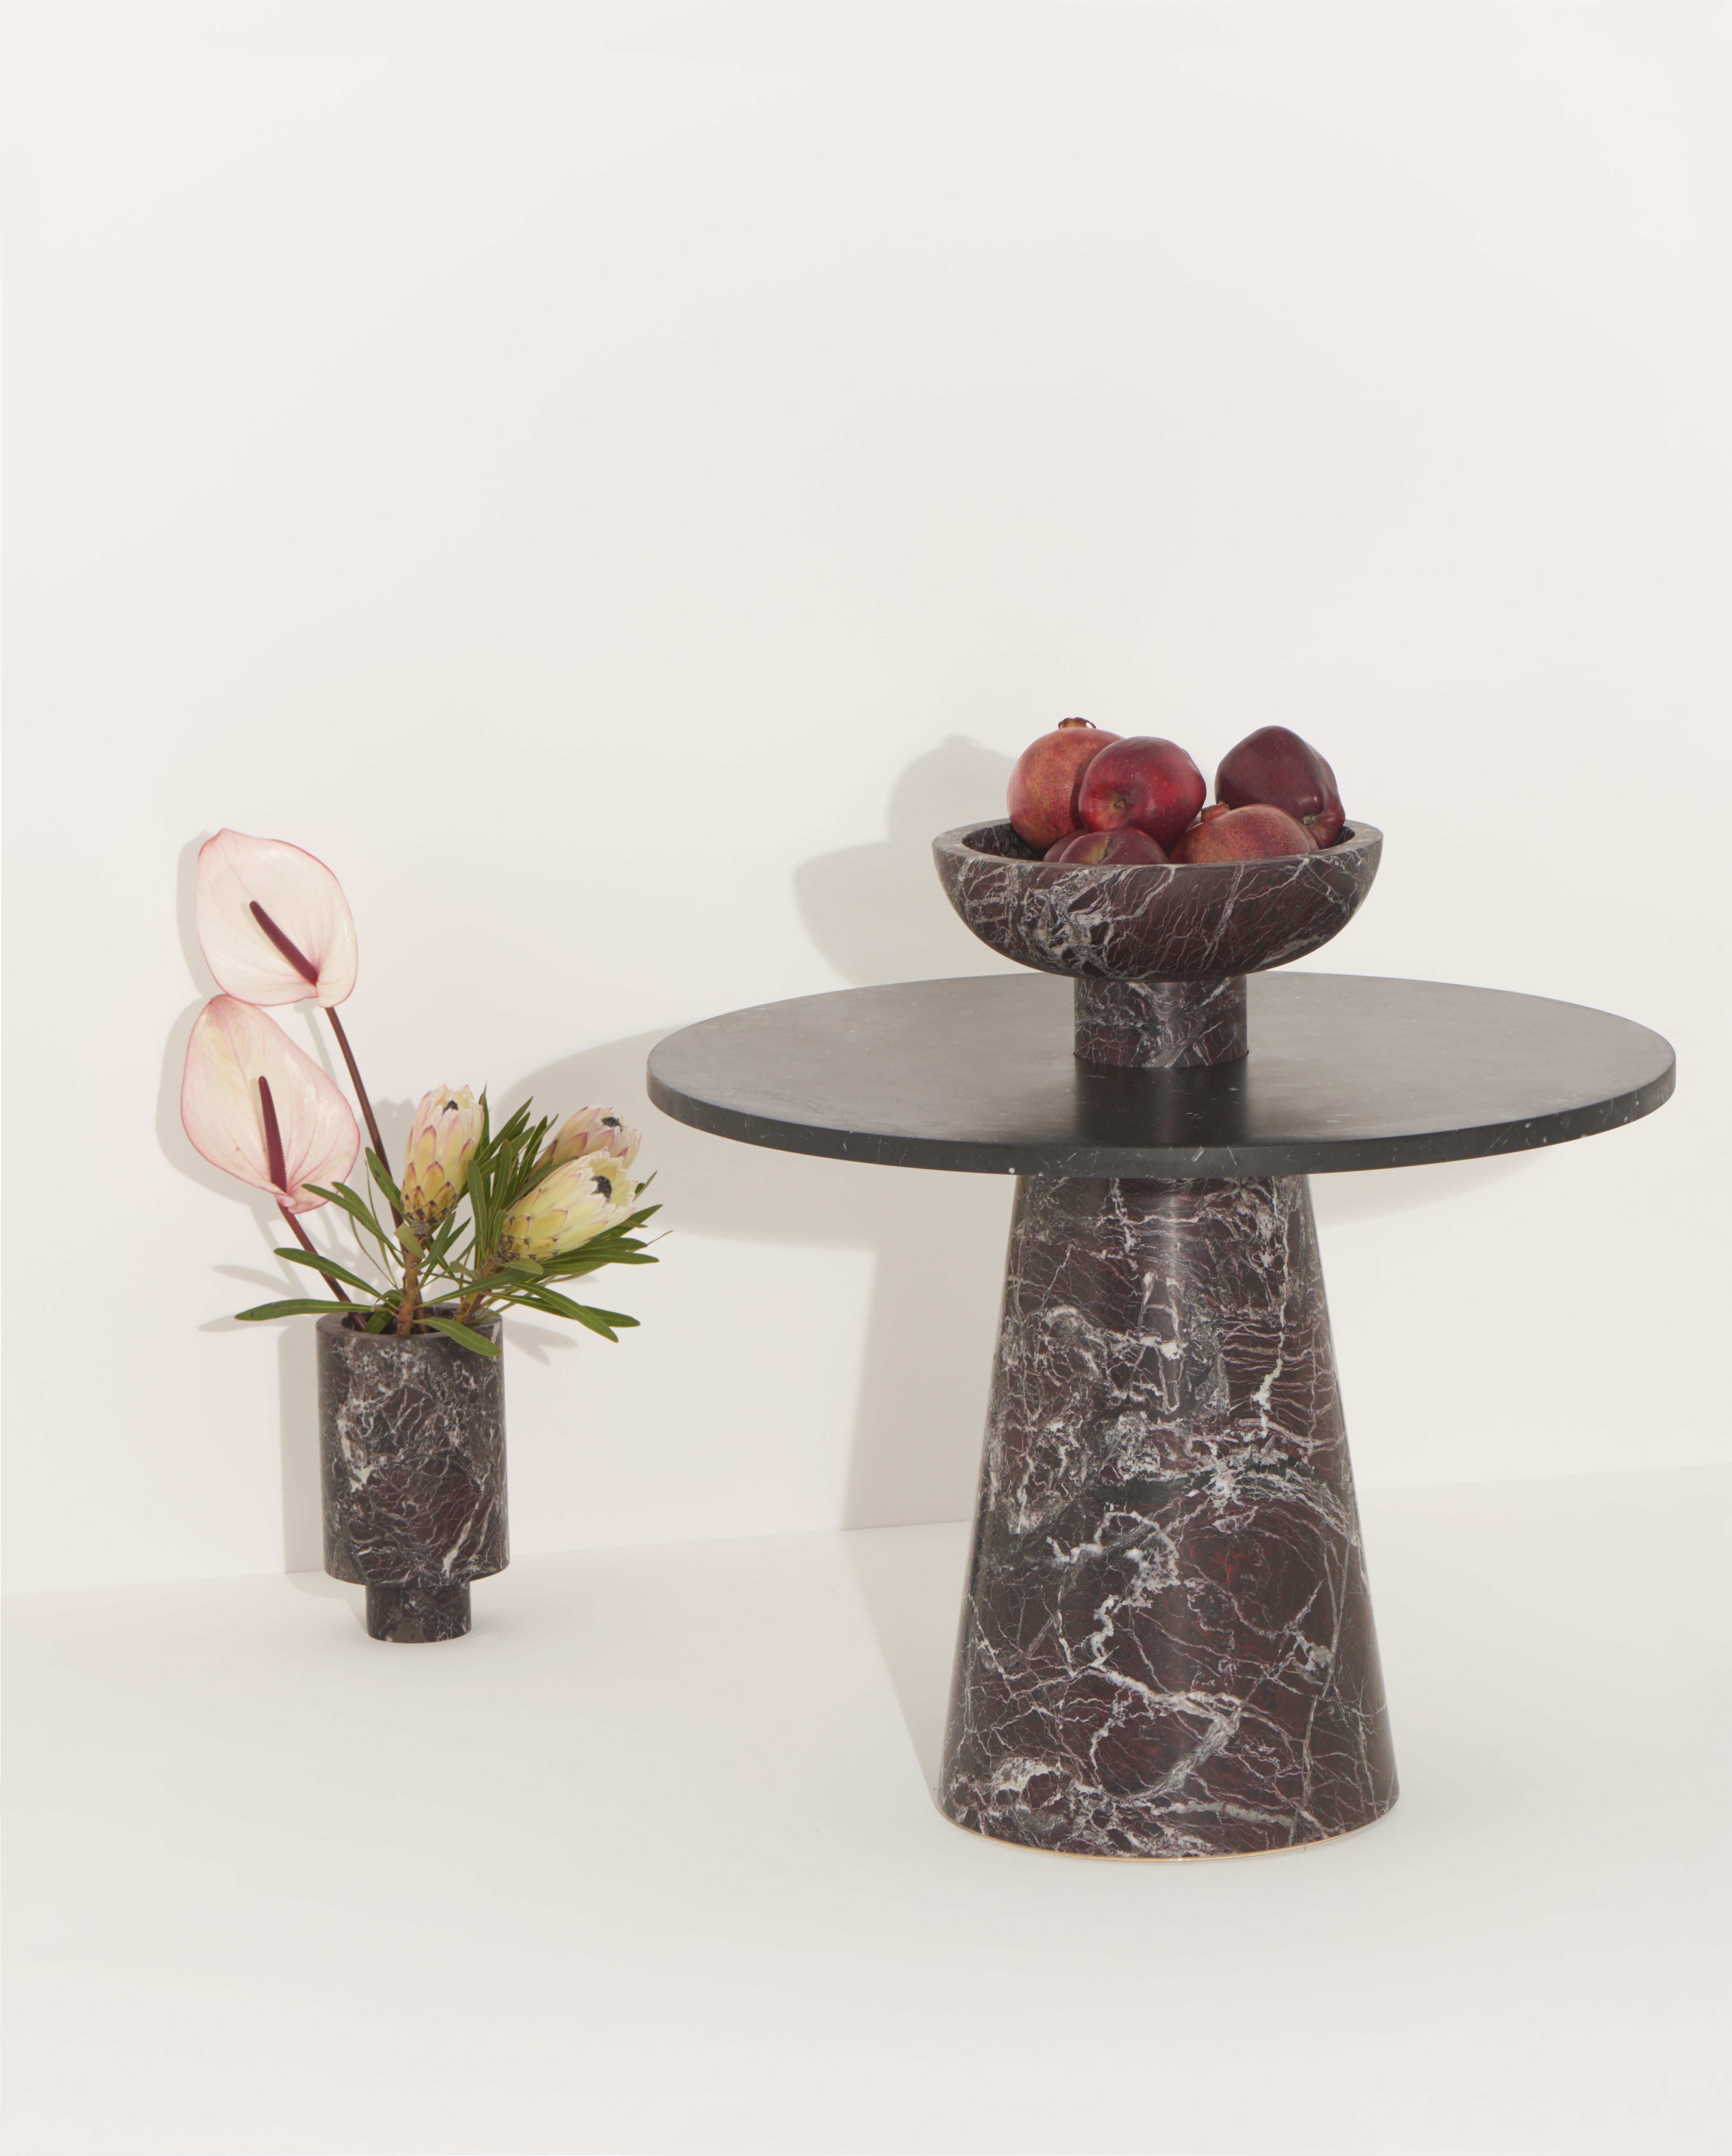 Italian New Modern Side Table Red and Black Marble, Creator Karen Chekerdjian STOCK For Sale